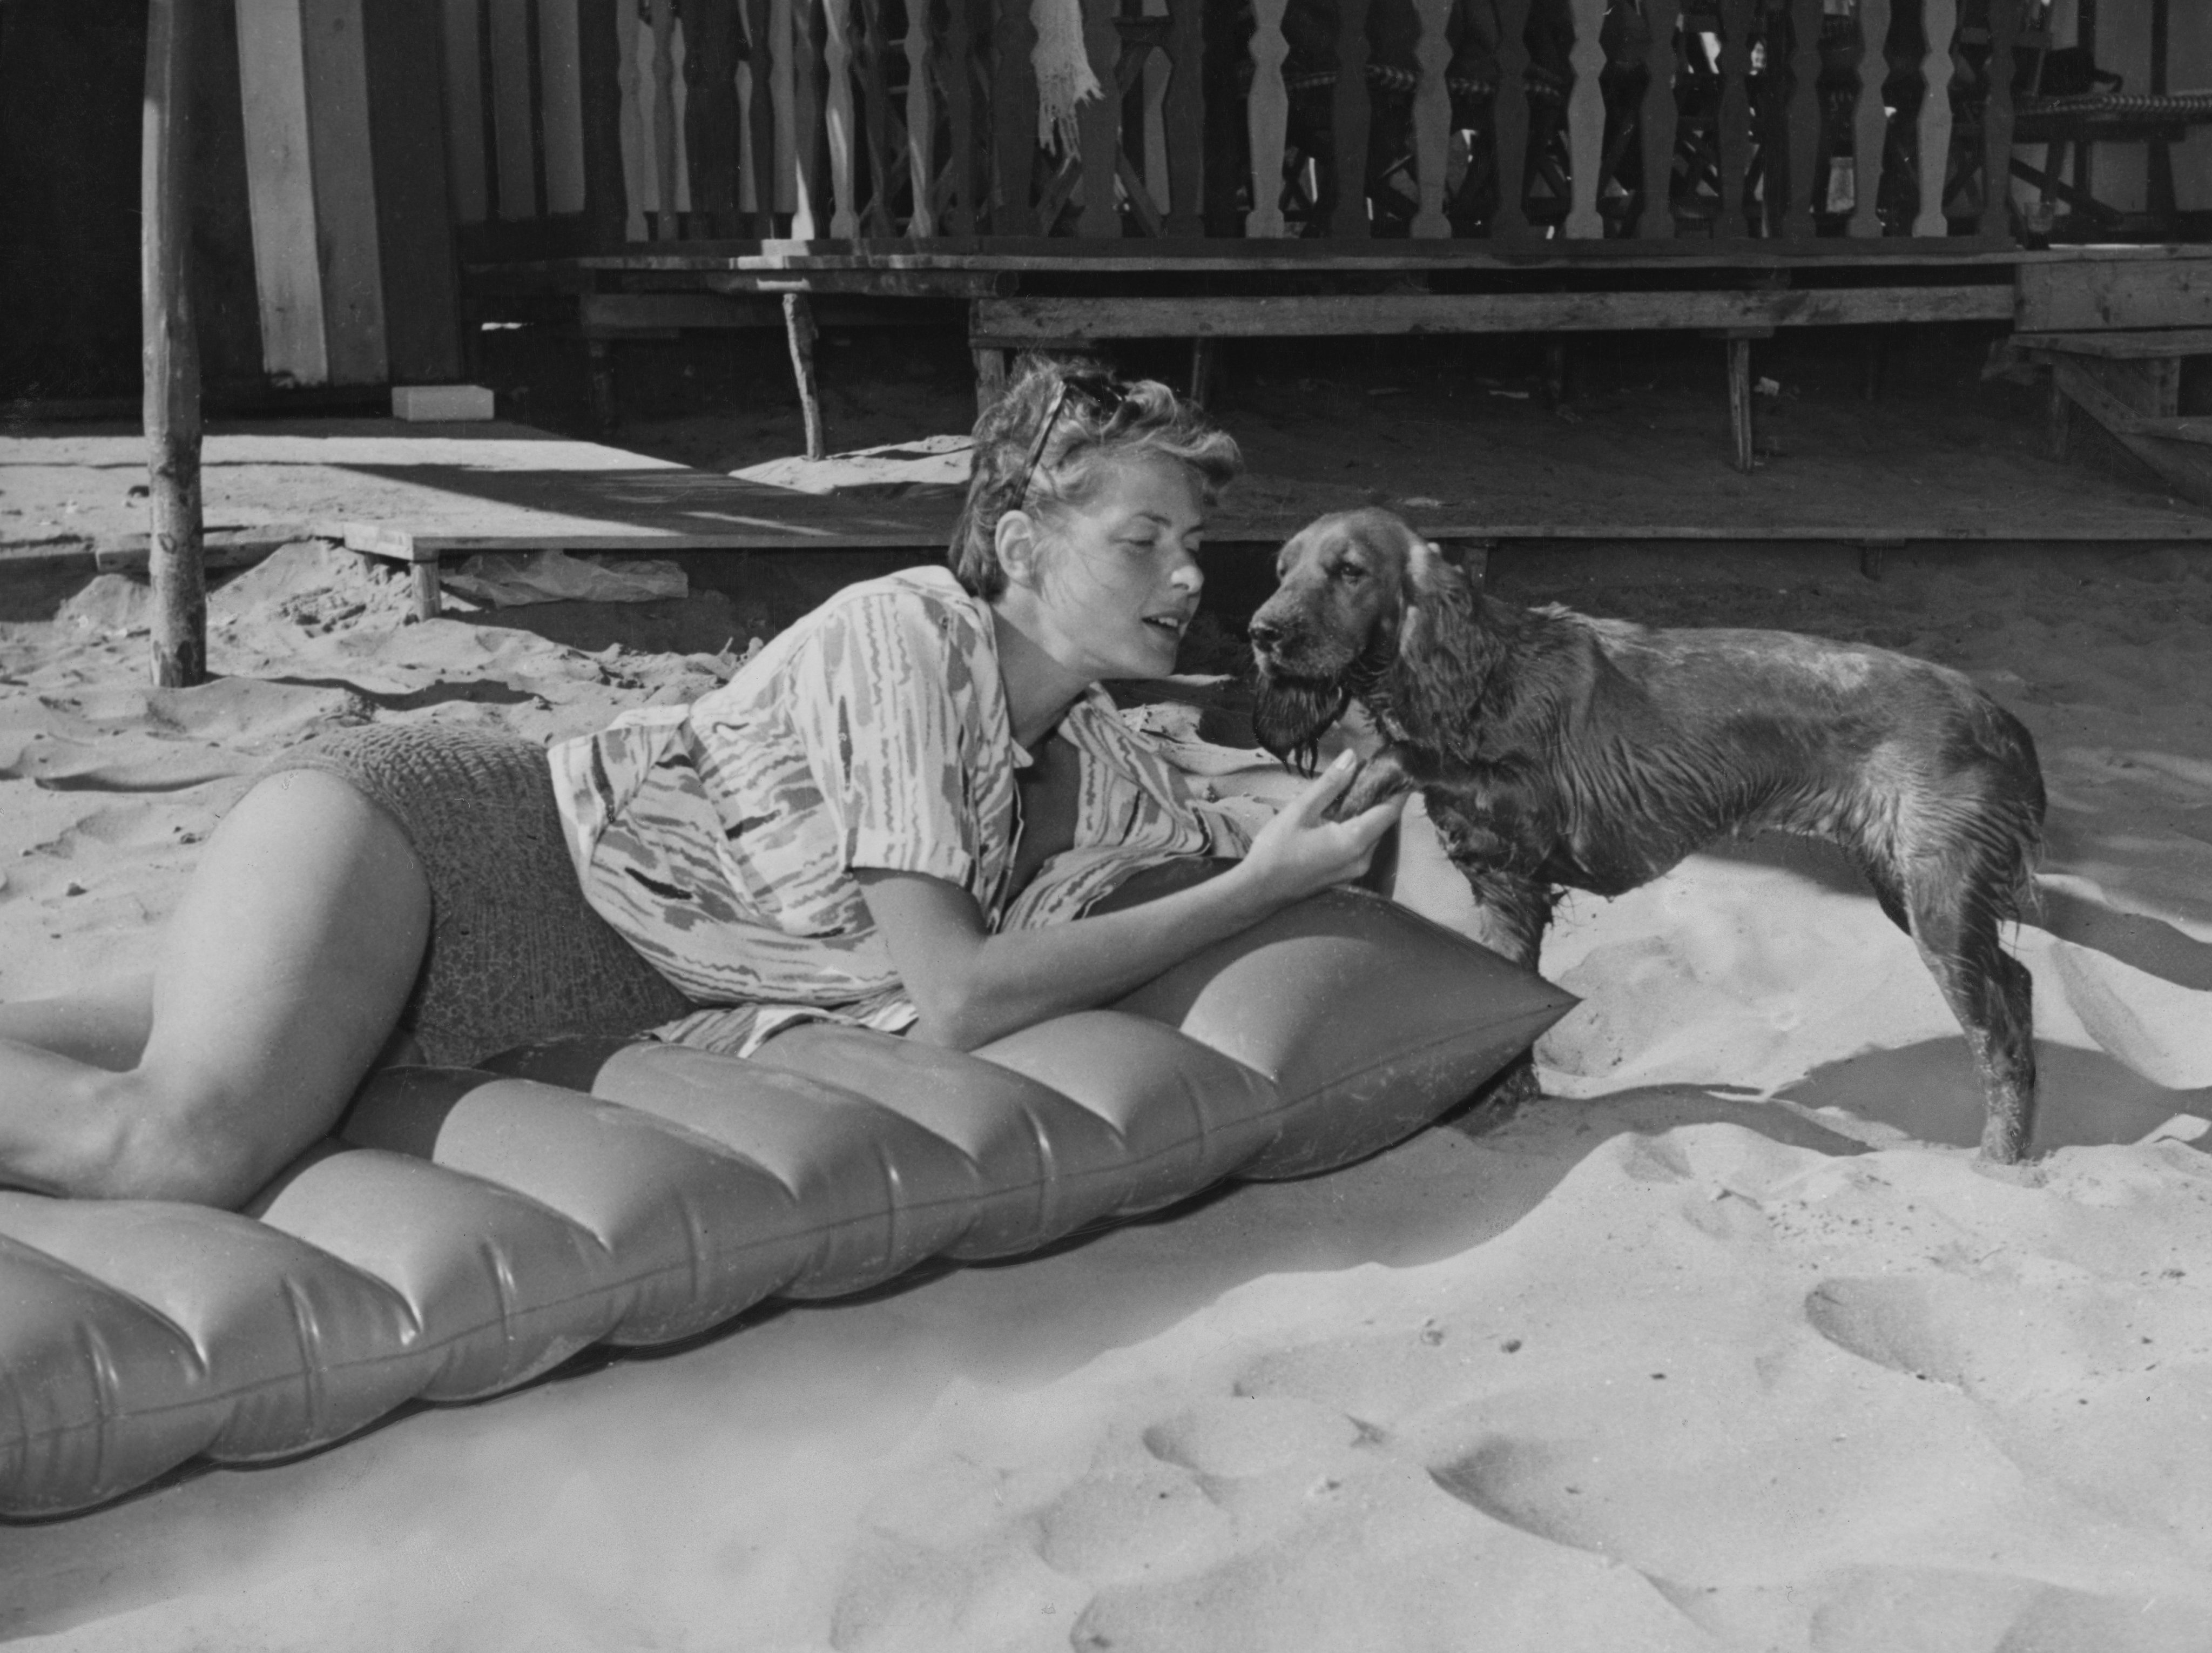 Ingrid Bergman with Spaniel Dog